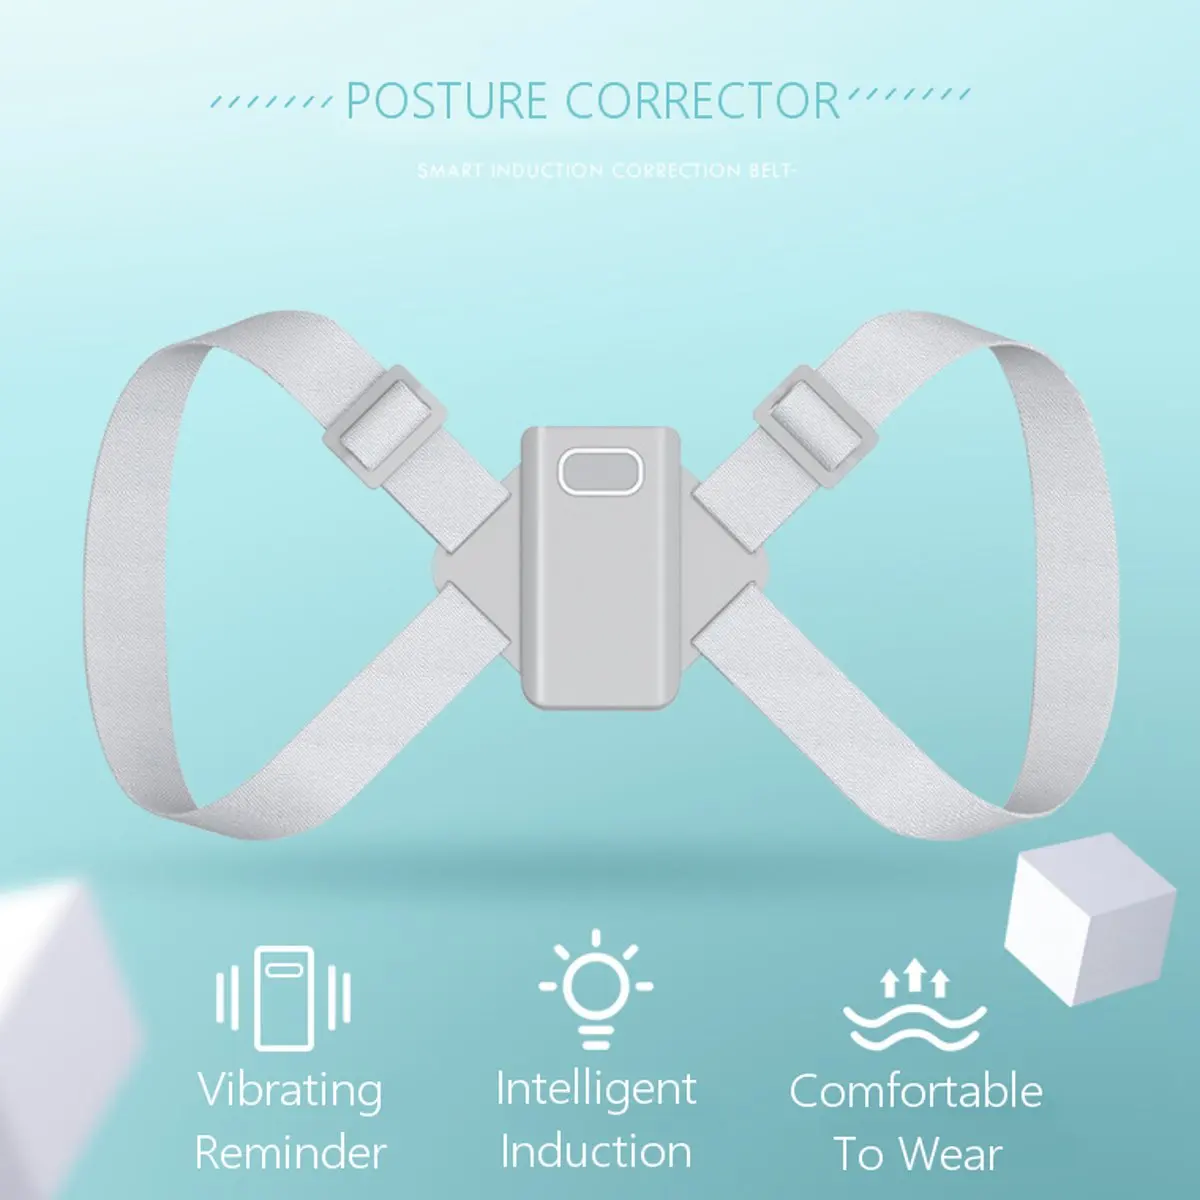 Adjustable Electric Back Posture Corrector Adult Back Brace Support Belt Shoulder Training Belt Lumbar Correction Health Care